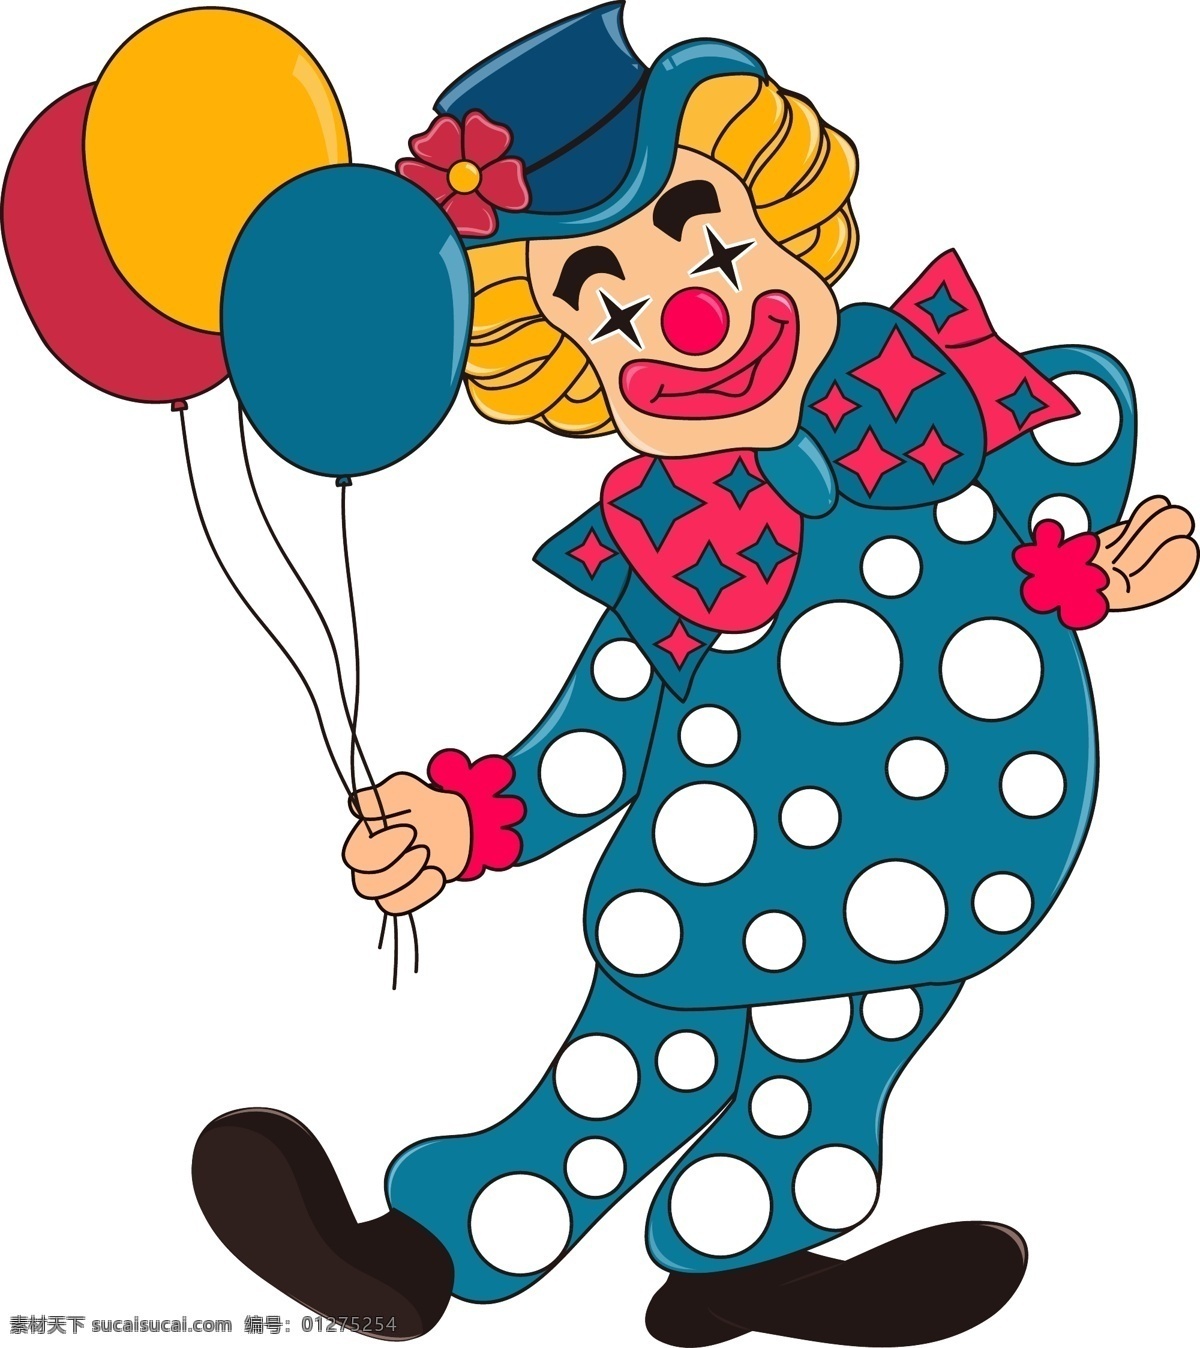 愚人节 气球 小丑 可爱 卡通 形象 幽默节 万圣节 微笑 马戏团 复古风格 彩色气球 滑稽表演 恶搞 欺骗 搞笑 愚你同乐 表演 舞台 矢量图 儿童节